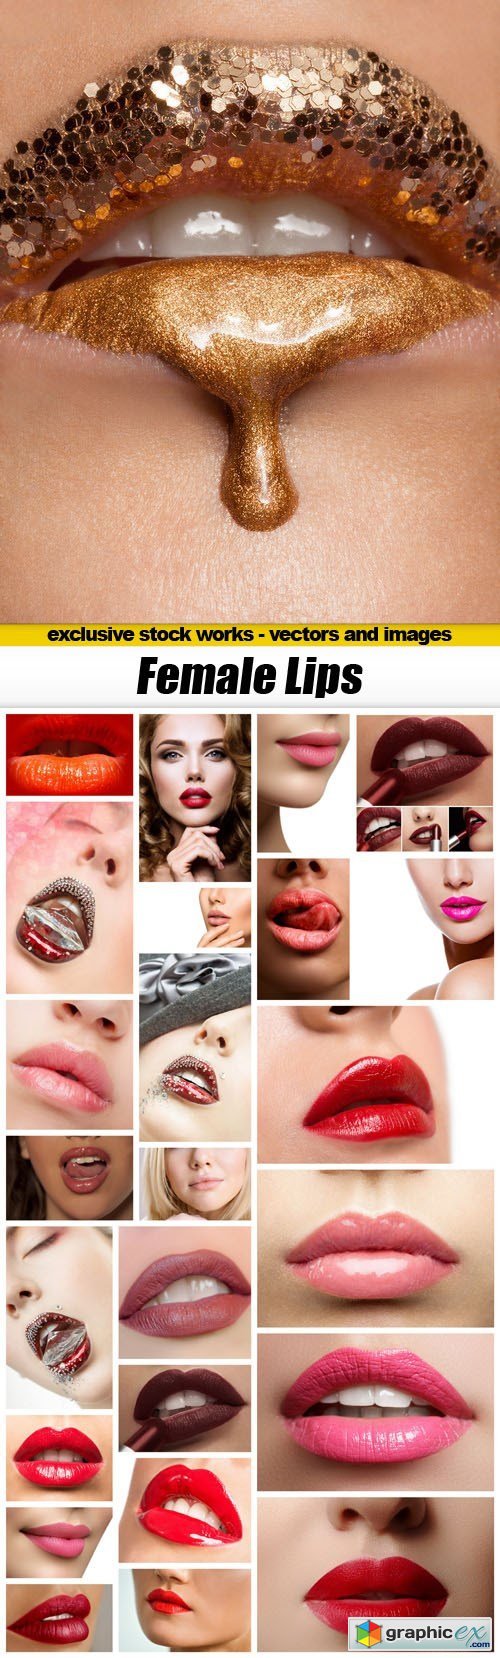 Female Lips - 25xUHQ JPEG